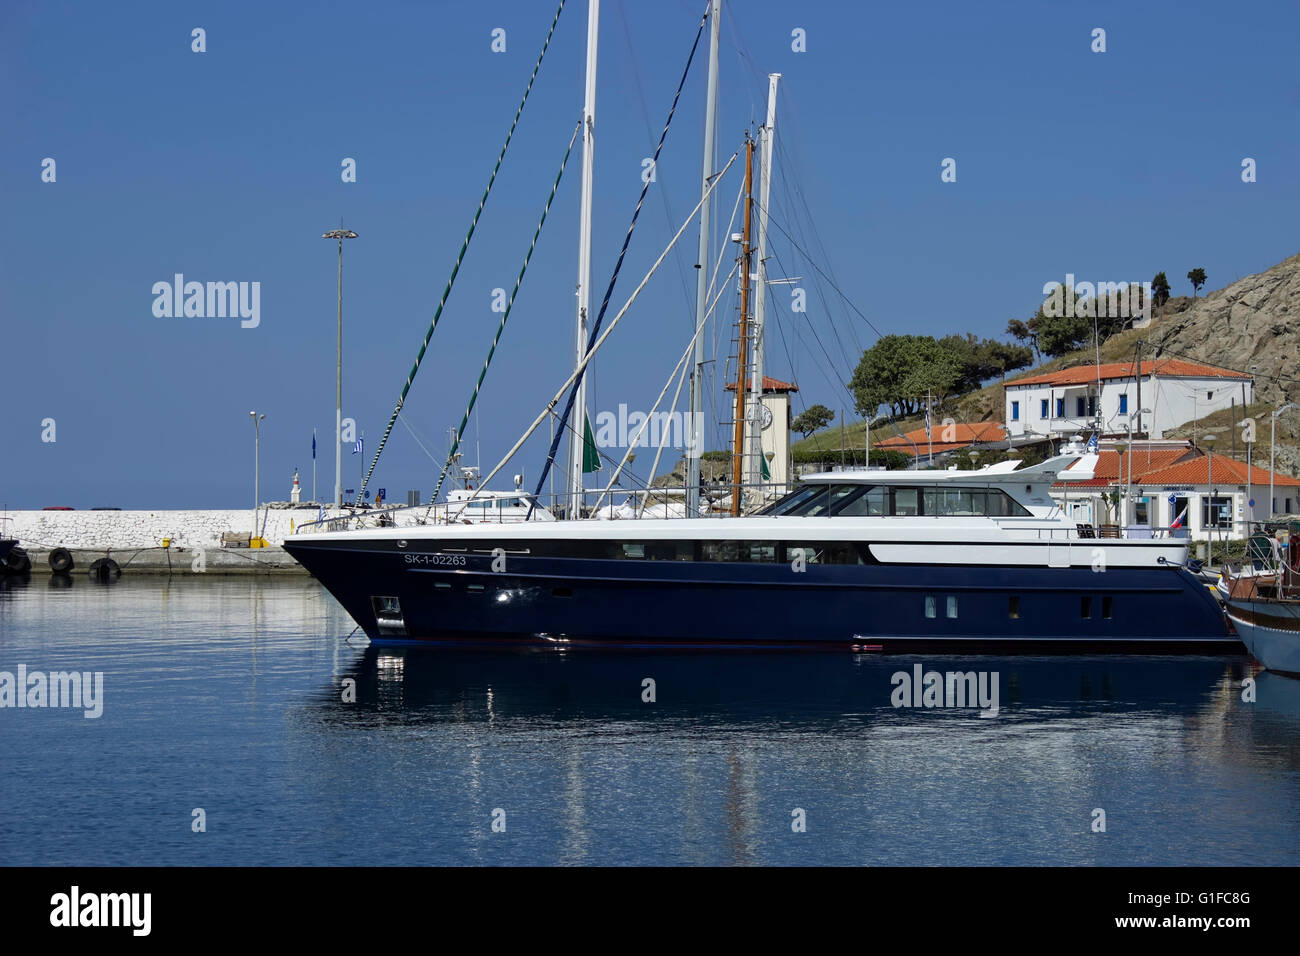 Blue lussuoso superyacht ancorato in Mirina del porto della città in estate. Lemnos o isola di Limnos, nord-est del mar Egeo in Grecia. Foto Stock